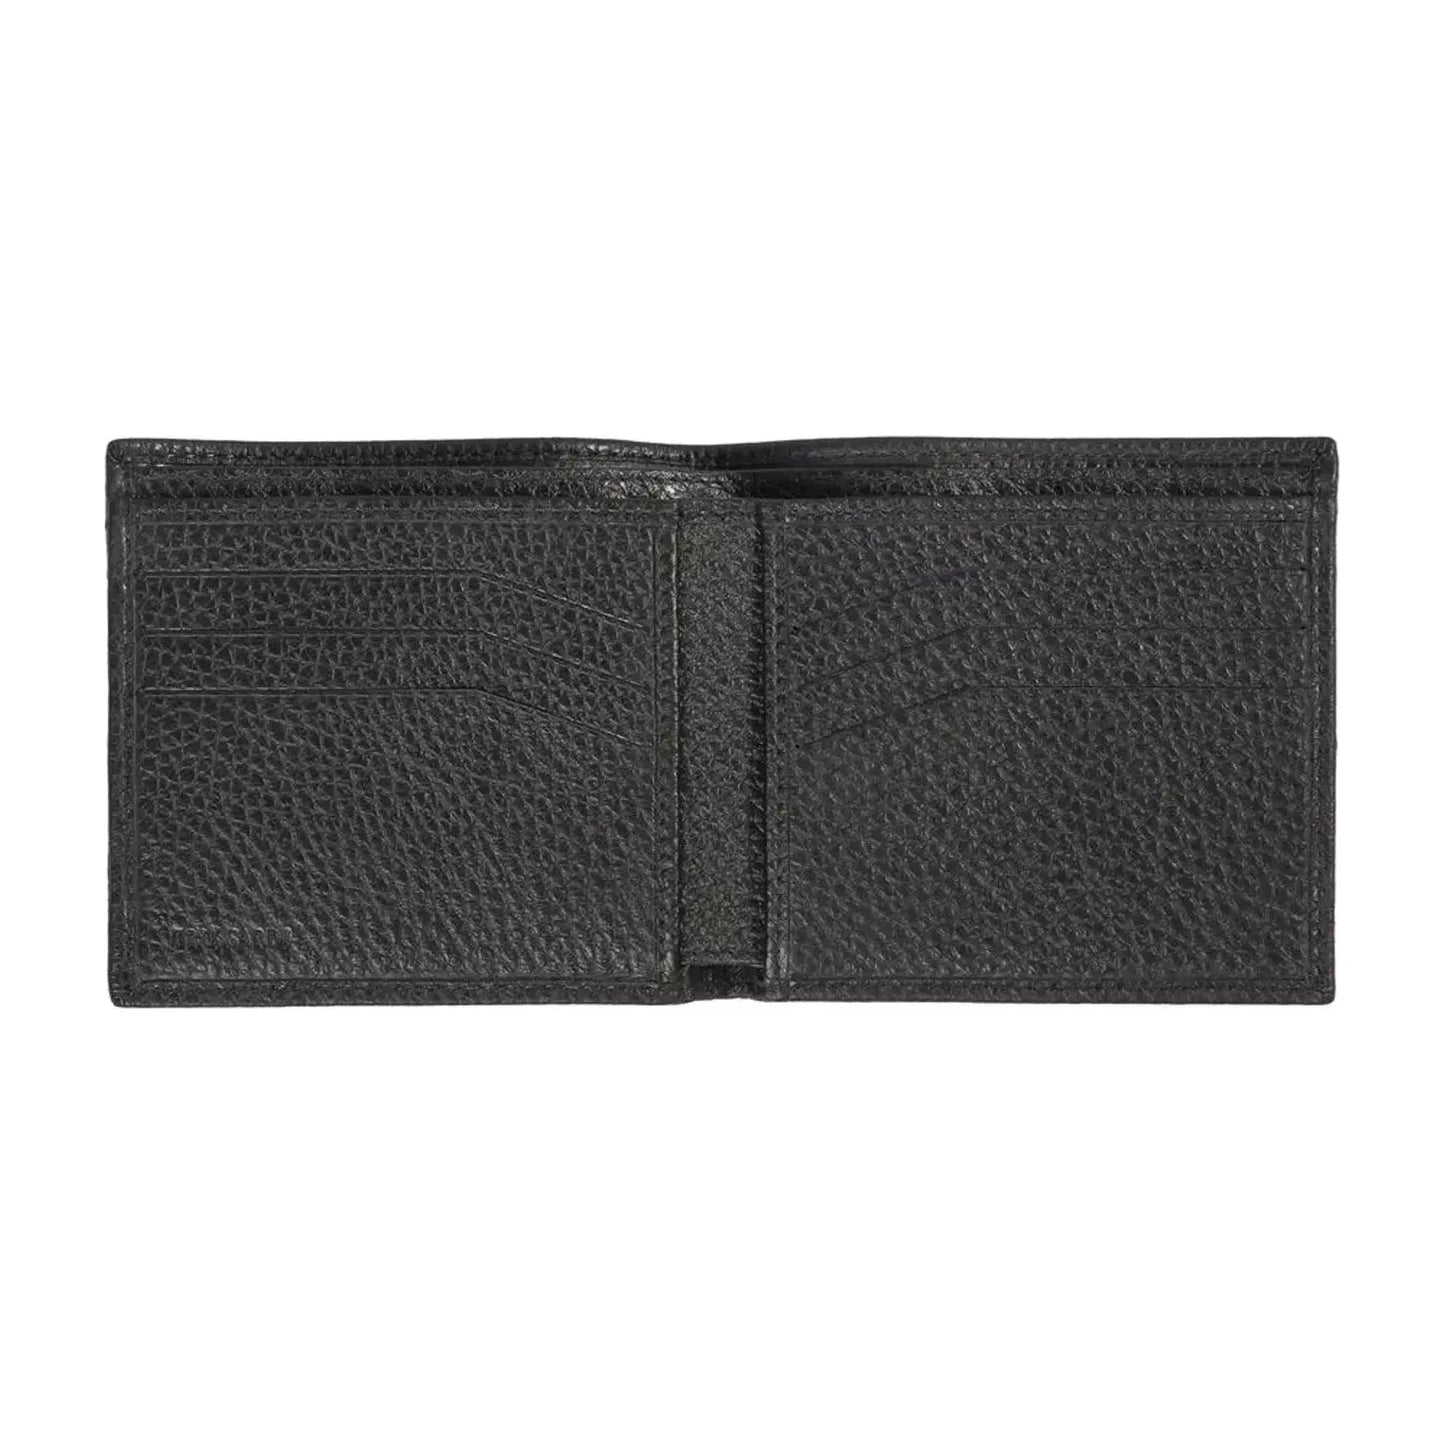 Trussardi Elegant Embossed Leather Men's Wallet black-leather-wallet-76